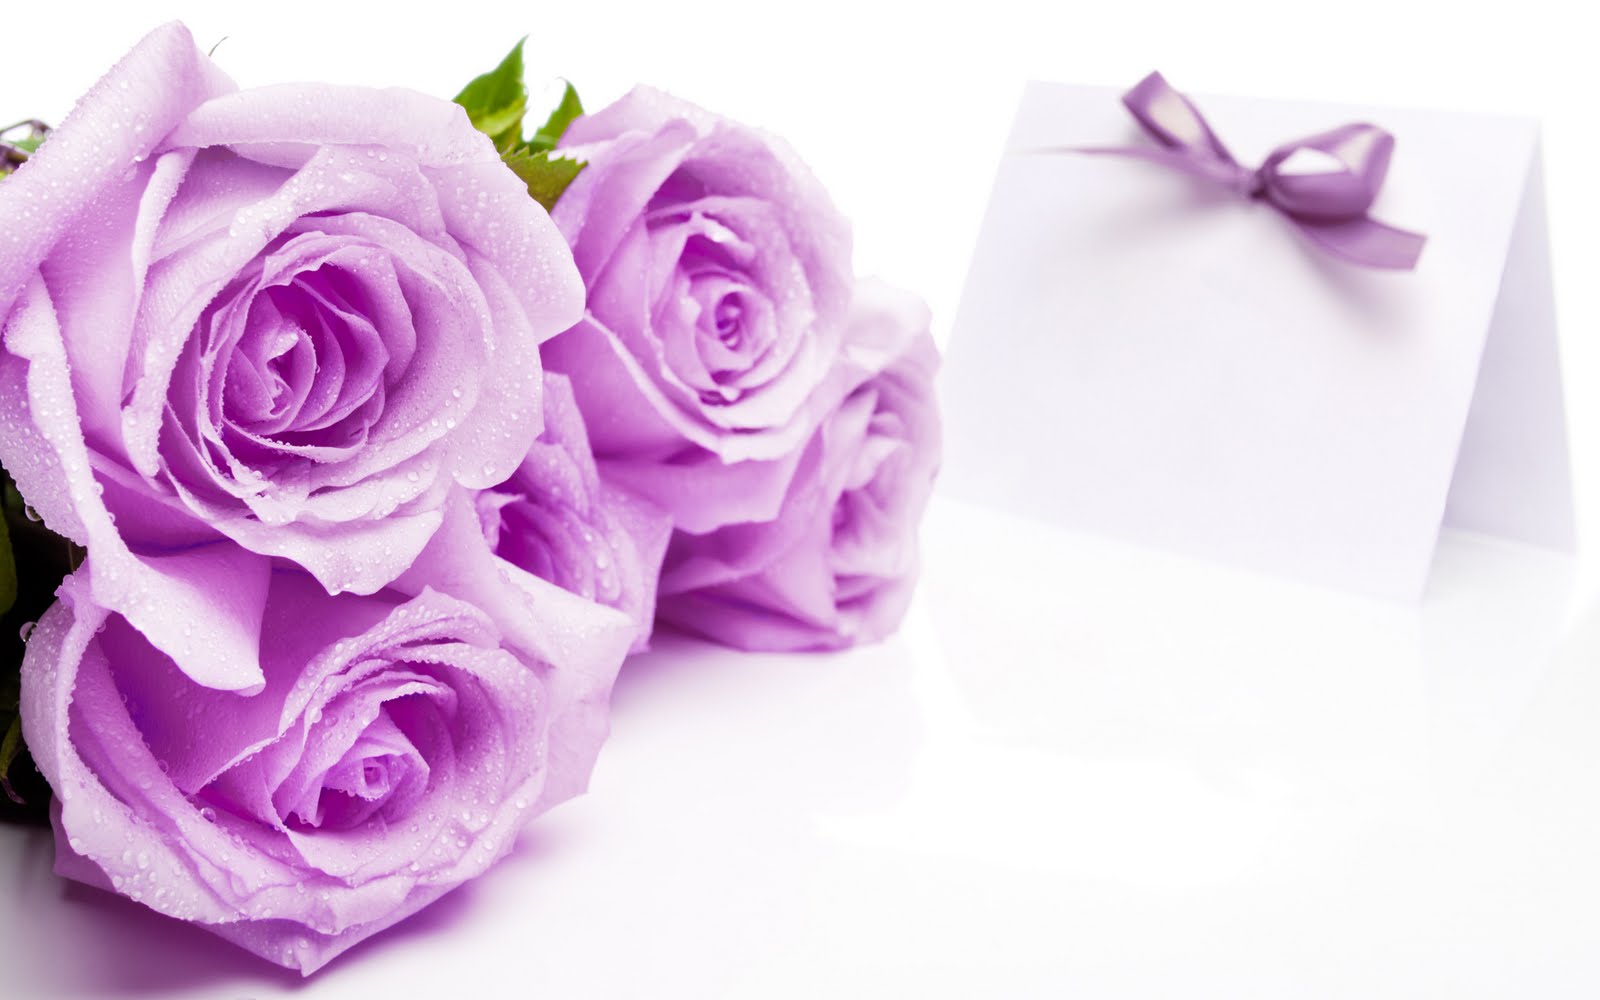 Hoa hồng tím tượng trưng cho tình yêu từ cái nhìn đầu tiên